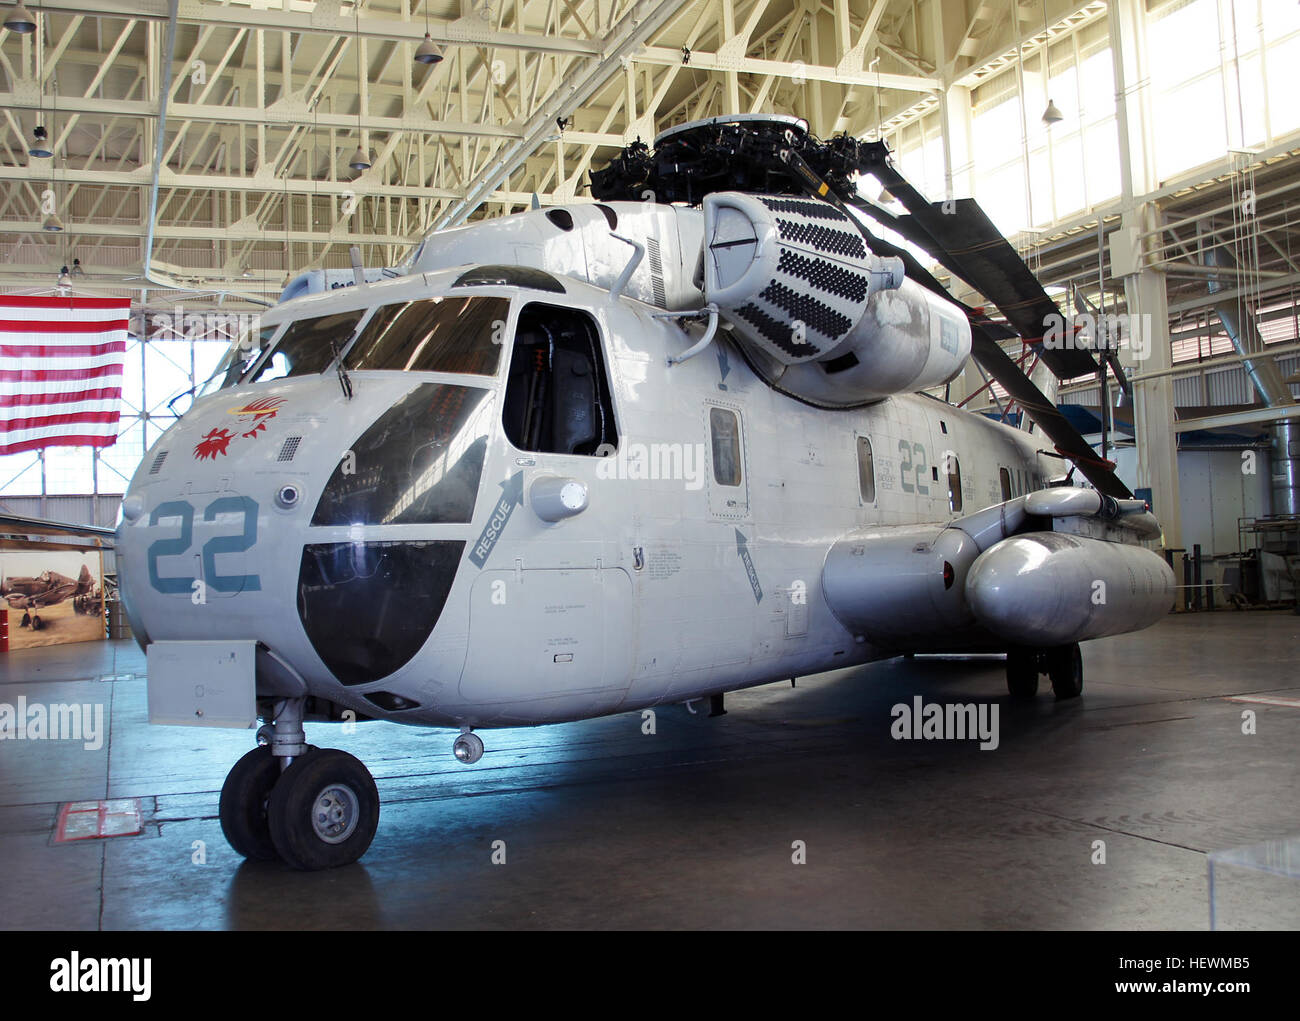 El tipo CH-53's misión primordial es mover carga y equipos, pero juegan un papel clave en operaciones especiales, haciendo más rápida la inserción y la extracción de tropas posibles y eficaces. Marina RH-53 Ds fueron utilizados para barrer las zonas minadas y remolque de buques. HH-53 USAF Super Jolly Green gigantes salvó muchas vidas en misiones de rescate en Vietnam. En 1980 la USAF convierten 53s a MH 53H/J/M allanar baja (helicópteros, pavimentar: precision avionics vectoring equipment. Baja: el avión podía volar cerca de la tierra para evitar la detección) y último voló en 2008. Este tipo CH-53D fue a Vietnam, se estrelló en 1970, y volvió a deber con el Foto de stock